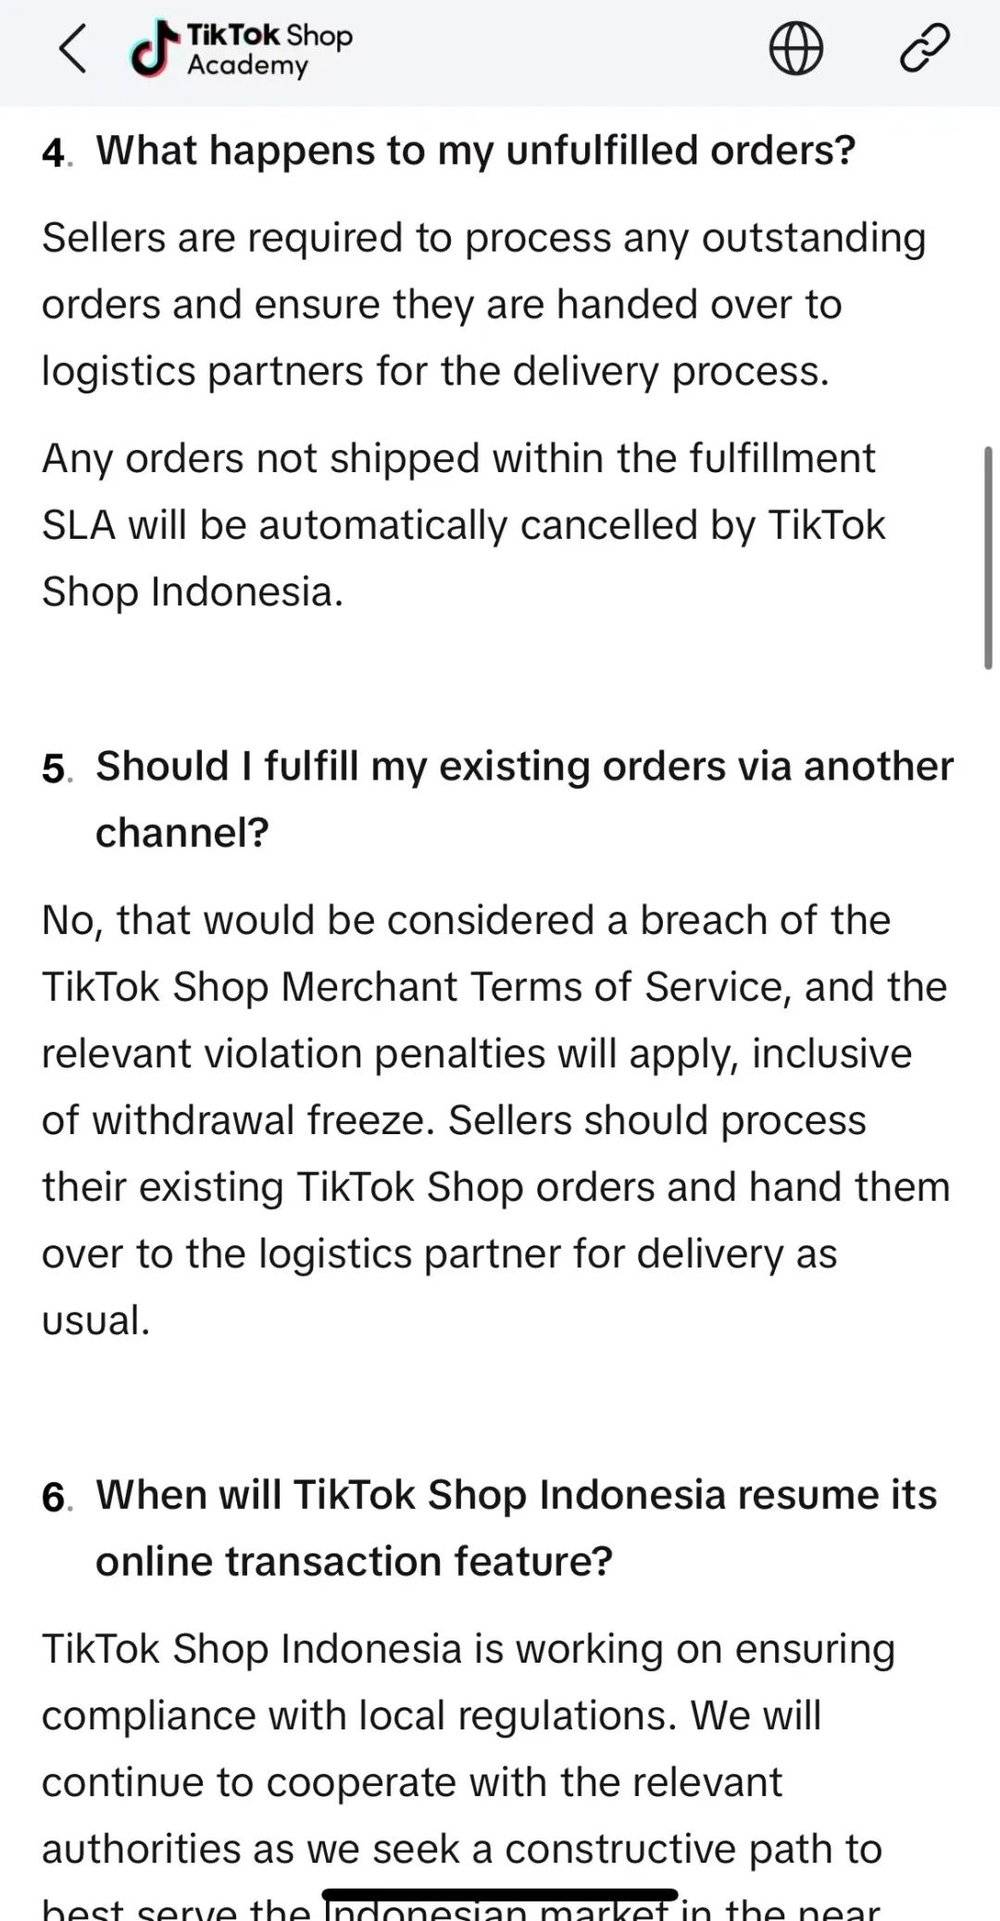 印尼关闭TikTok电商后：渡劫、机会、观望与希望